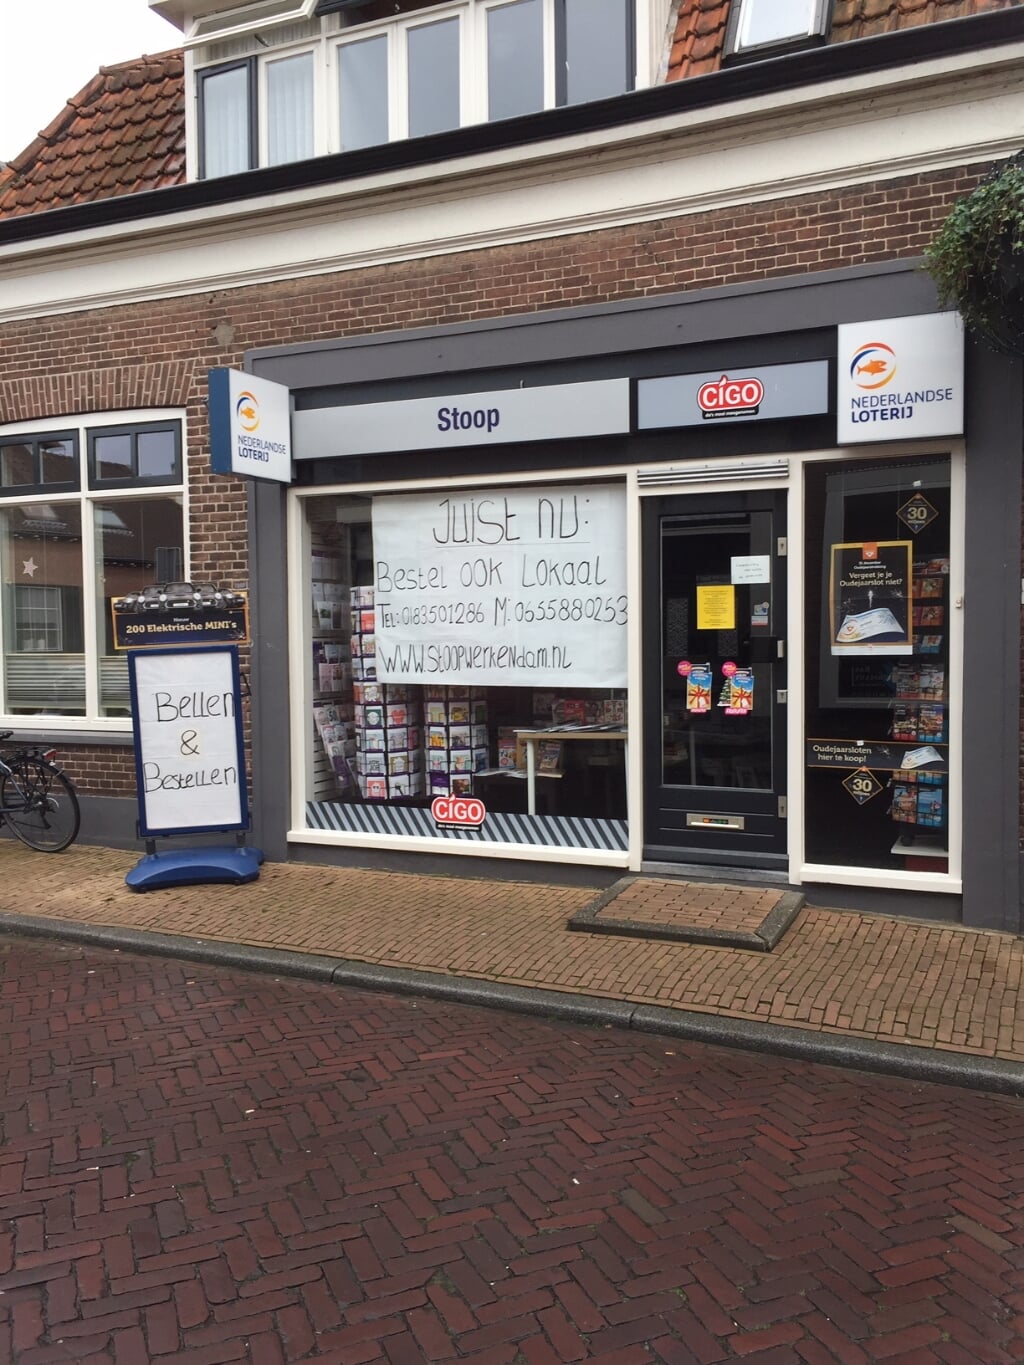 • CIGO Stoop aan de Kruisstraat in Werkendam.